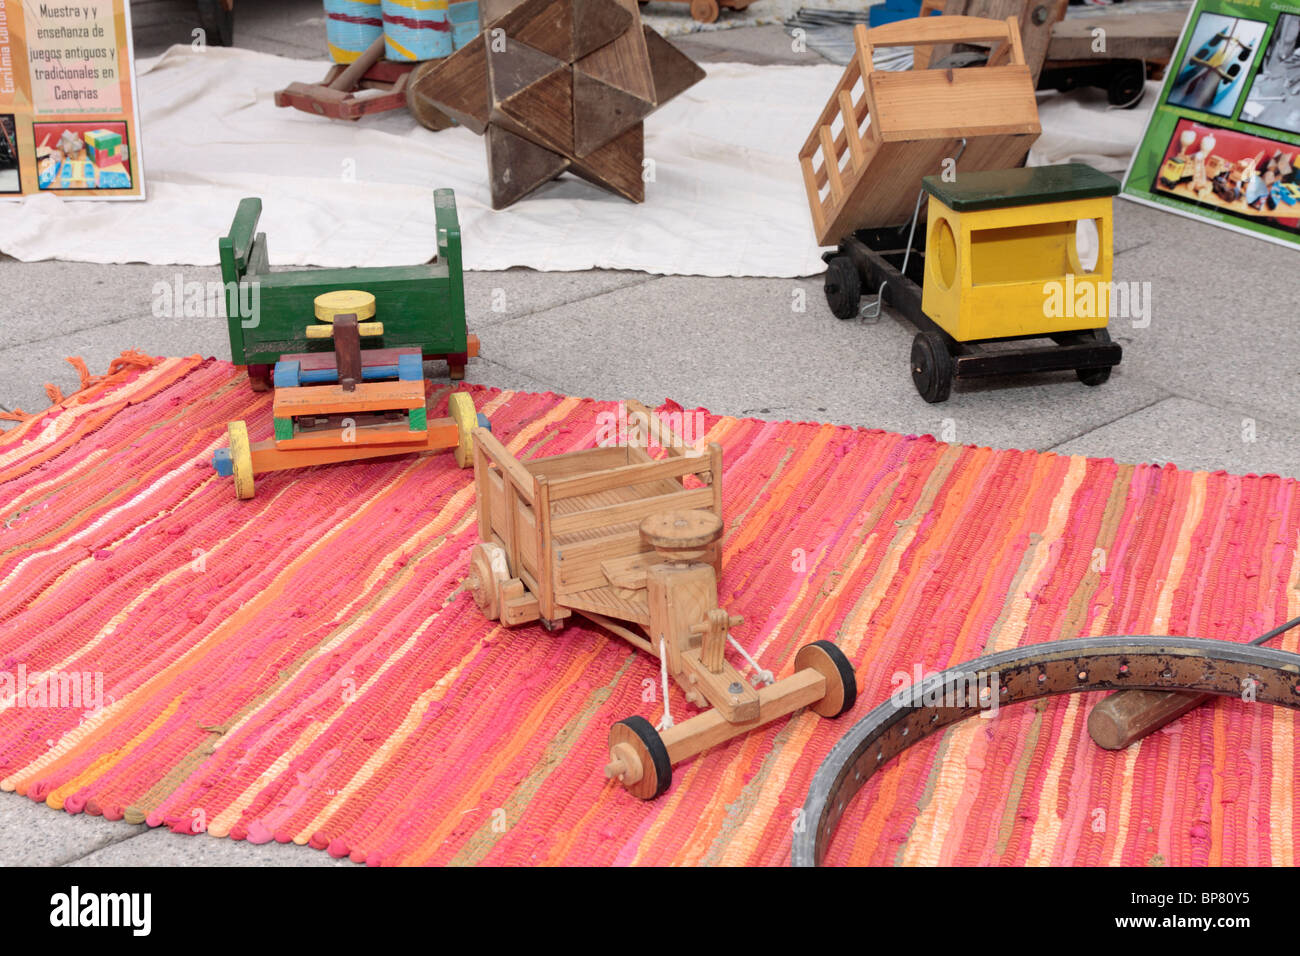 Une exposition de vieux jouets en bois à une foire artisanale à Adeje à Tenerife Espagne Europe Banque D'Images